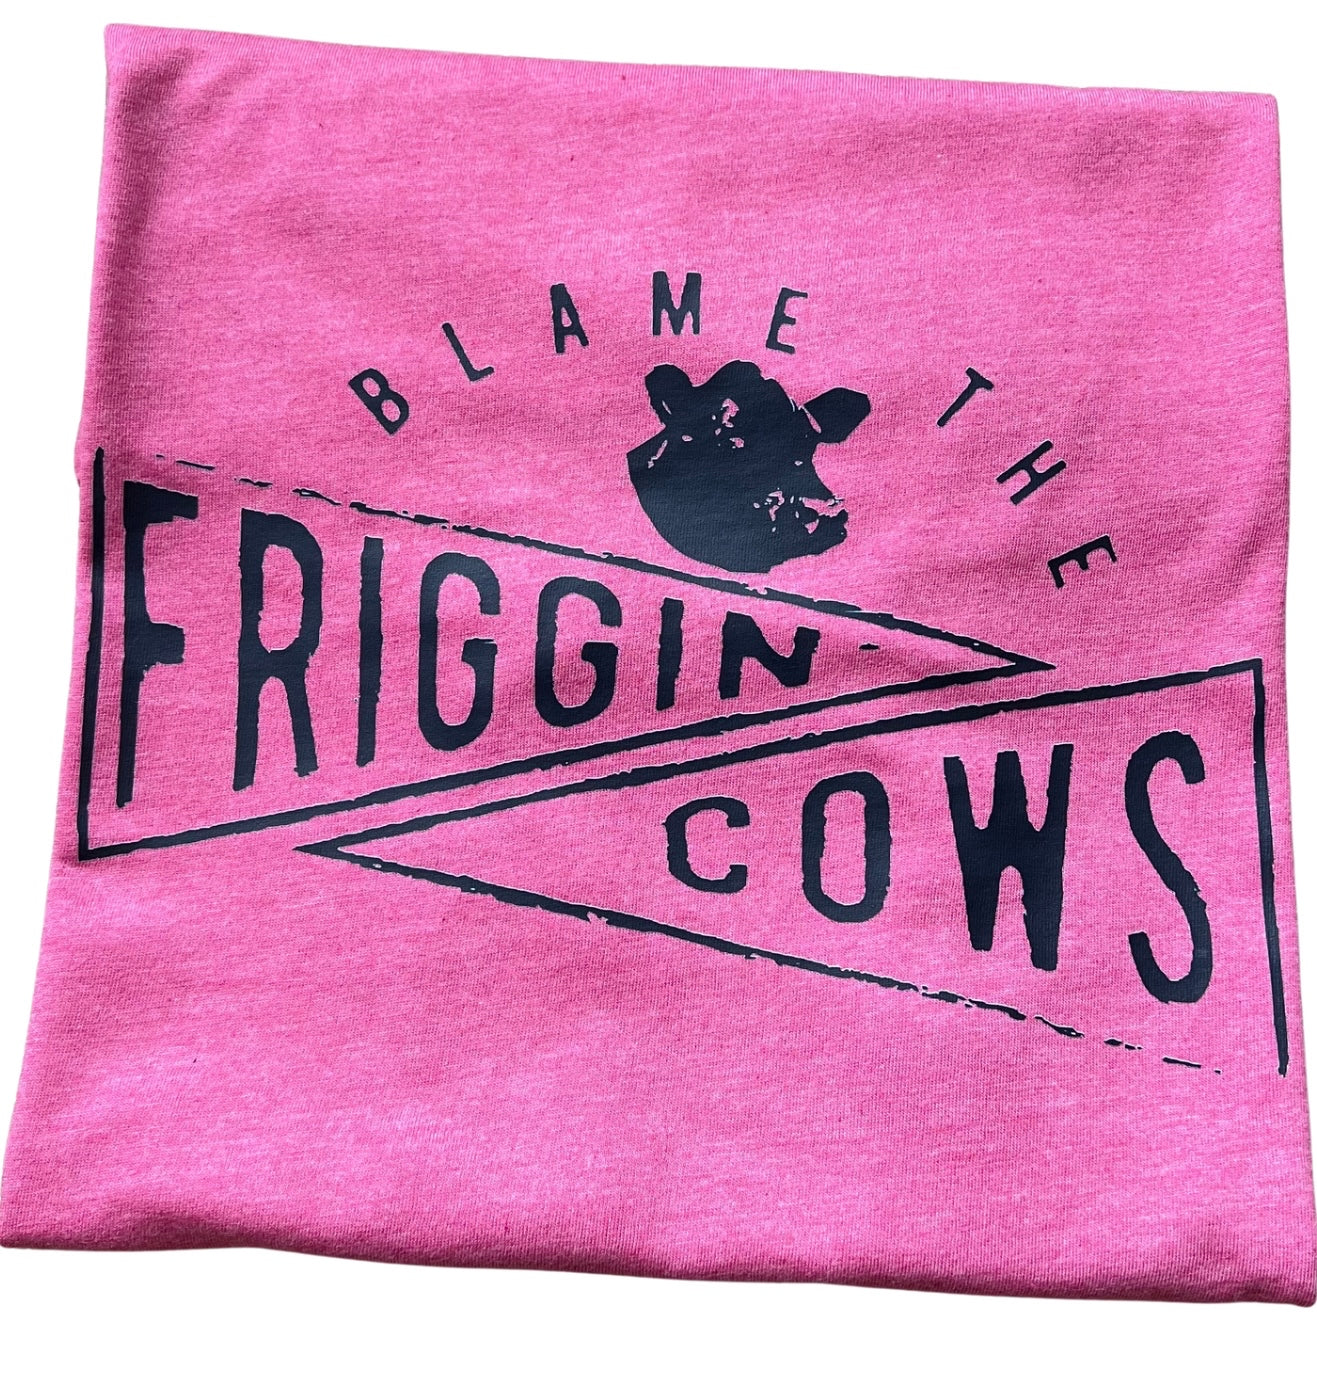 BLAME THE FRIGGIN COWS